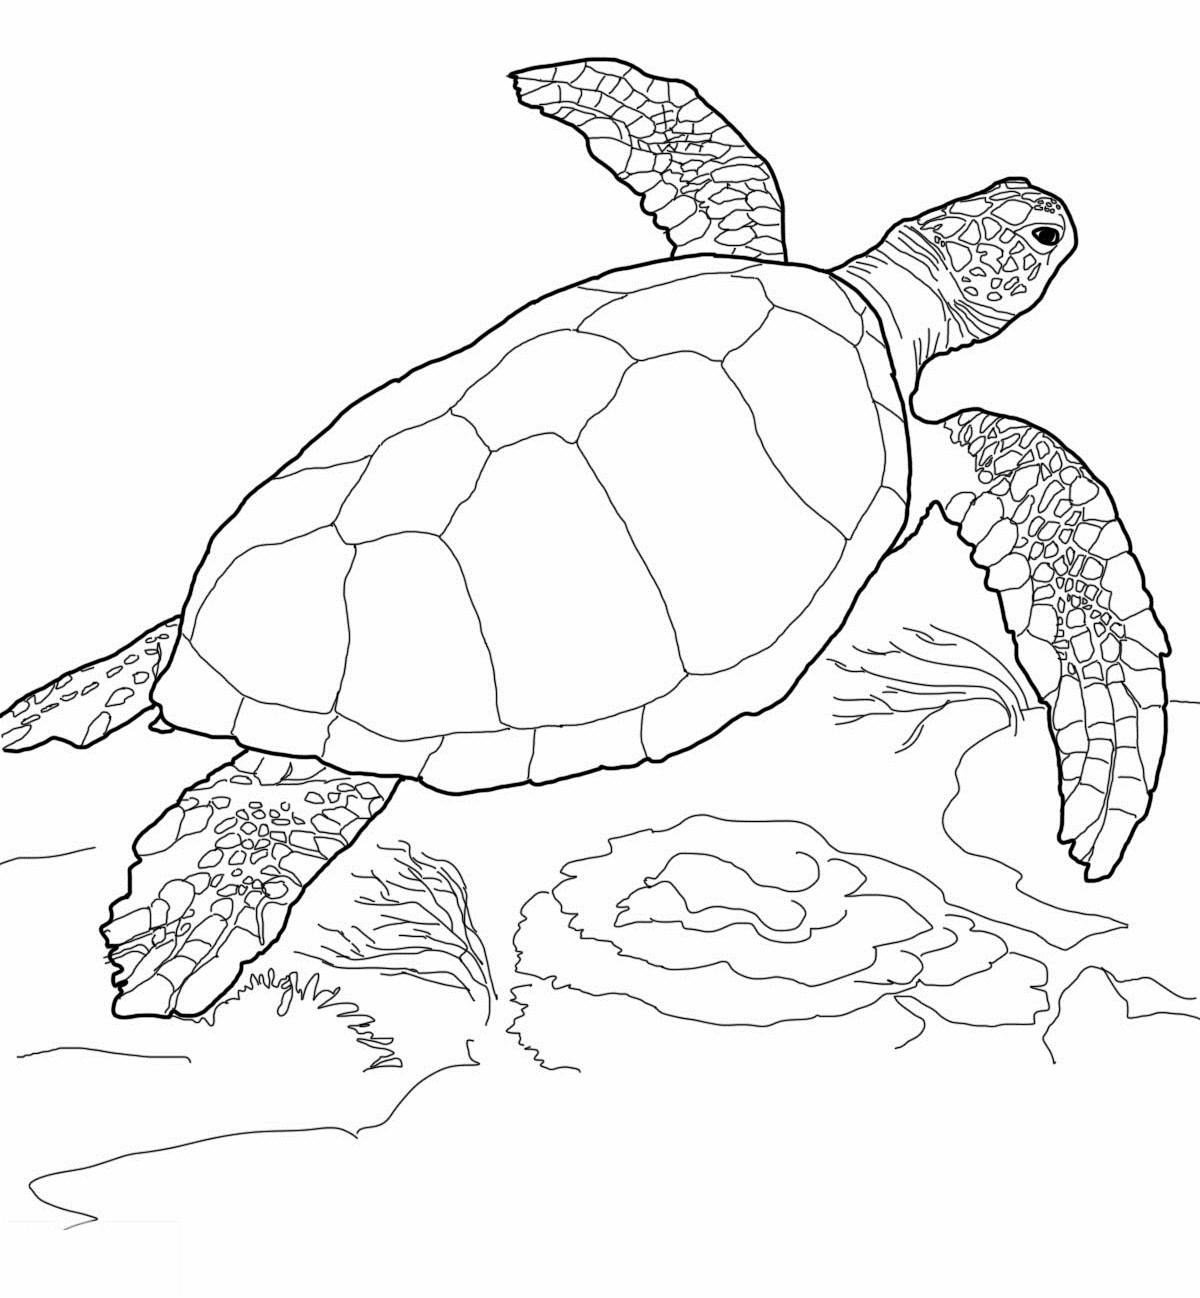 Schildkröte Ausmalbilder
 Ausmalbilder Malvorlagen – Schildkröte kostenlos zum